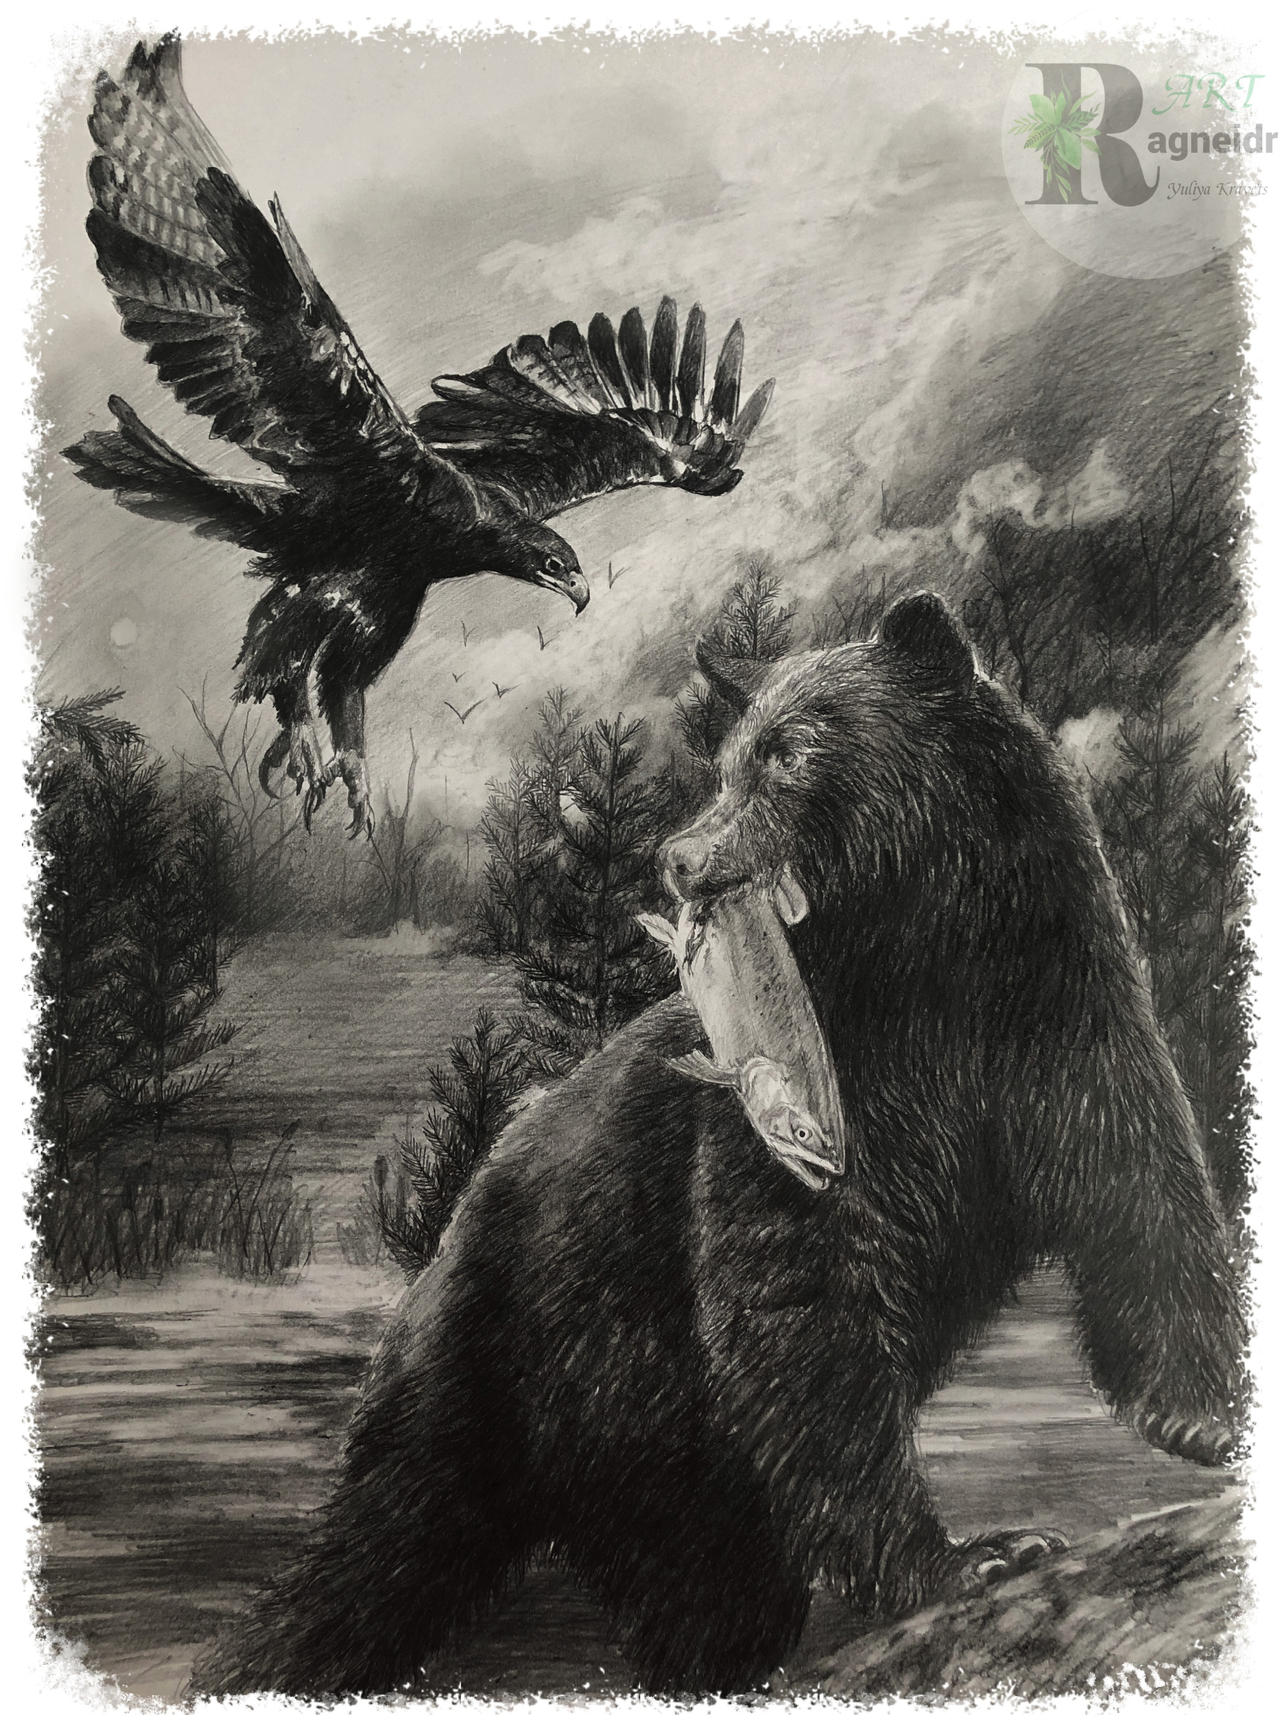 black bear and black eagle by ragneidr on DeviantArt